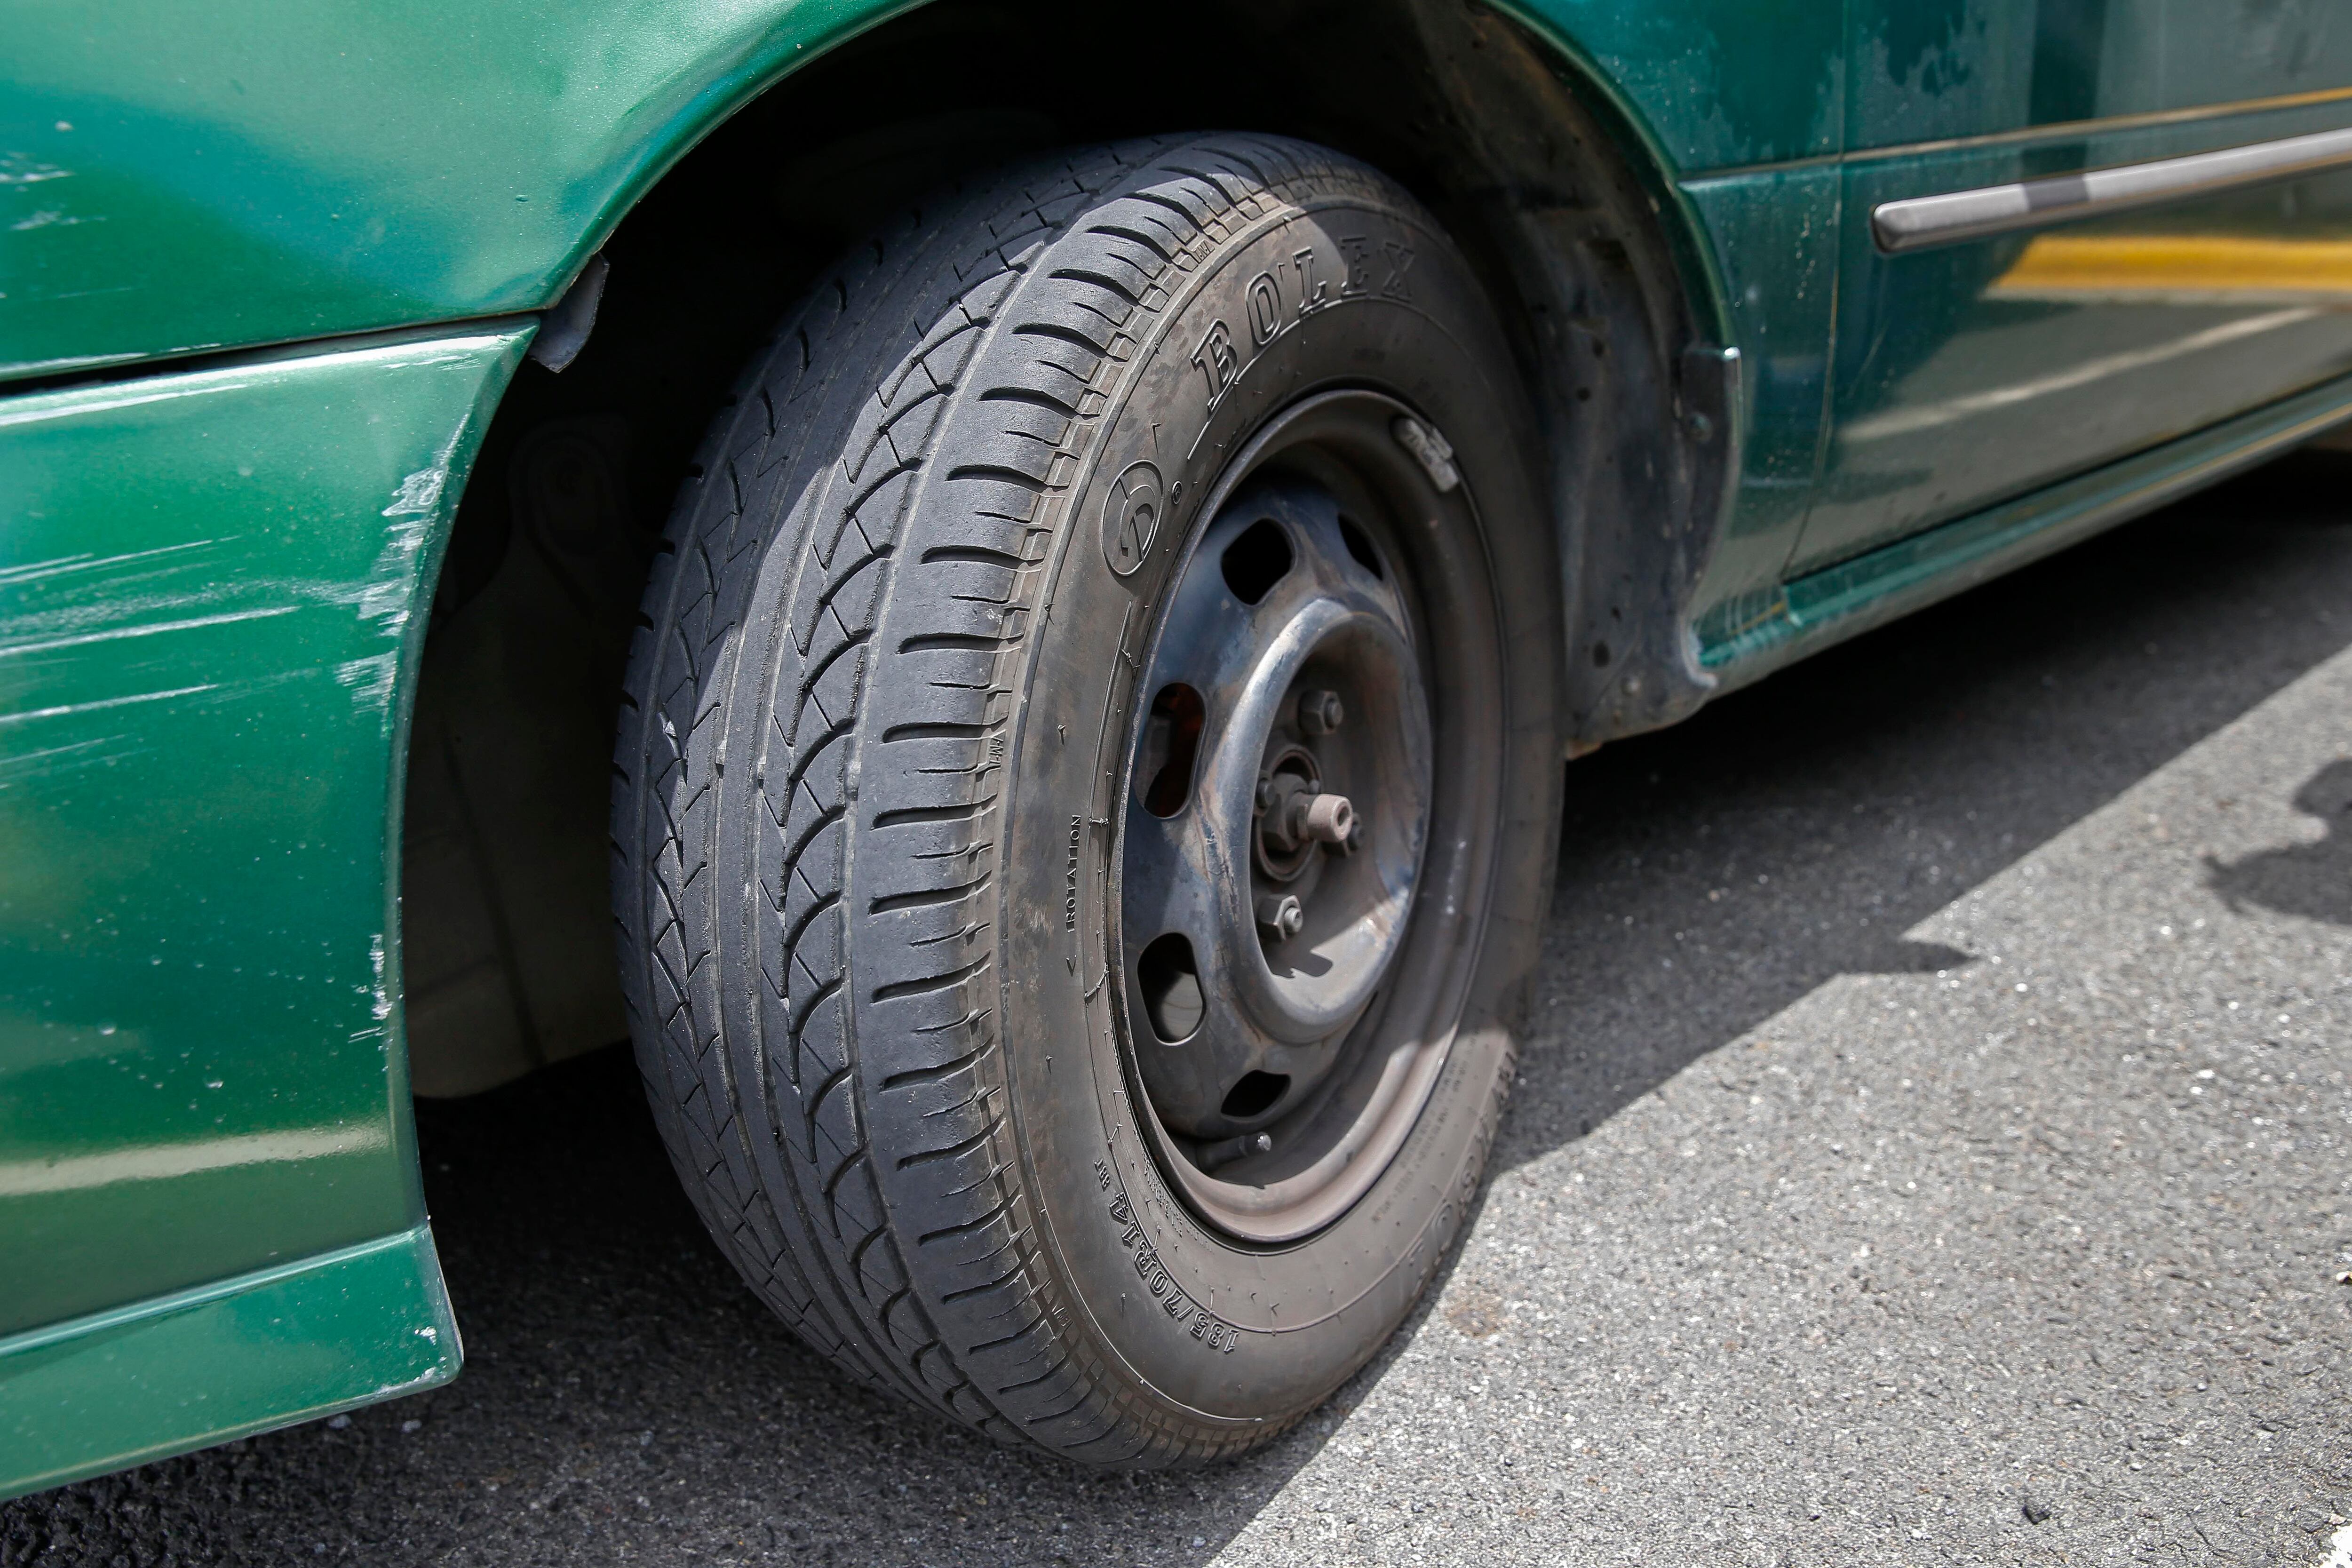 El estado de las llantas puede indicar la cantidad de desgaste de un vehículo. Fotografía: